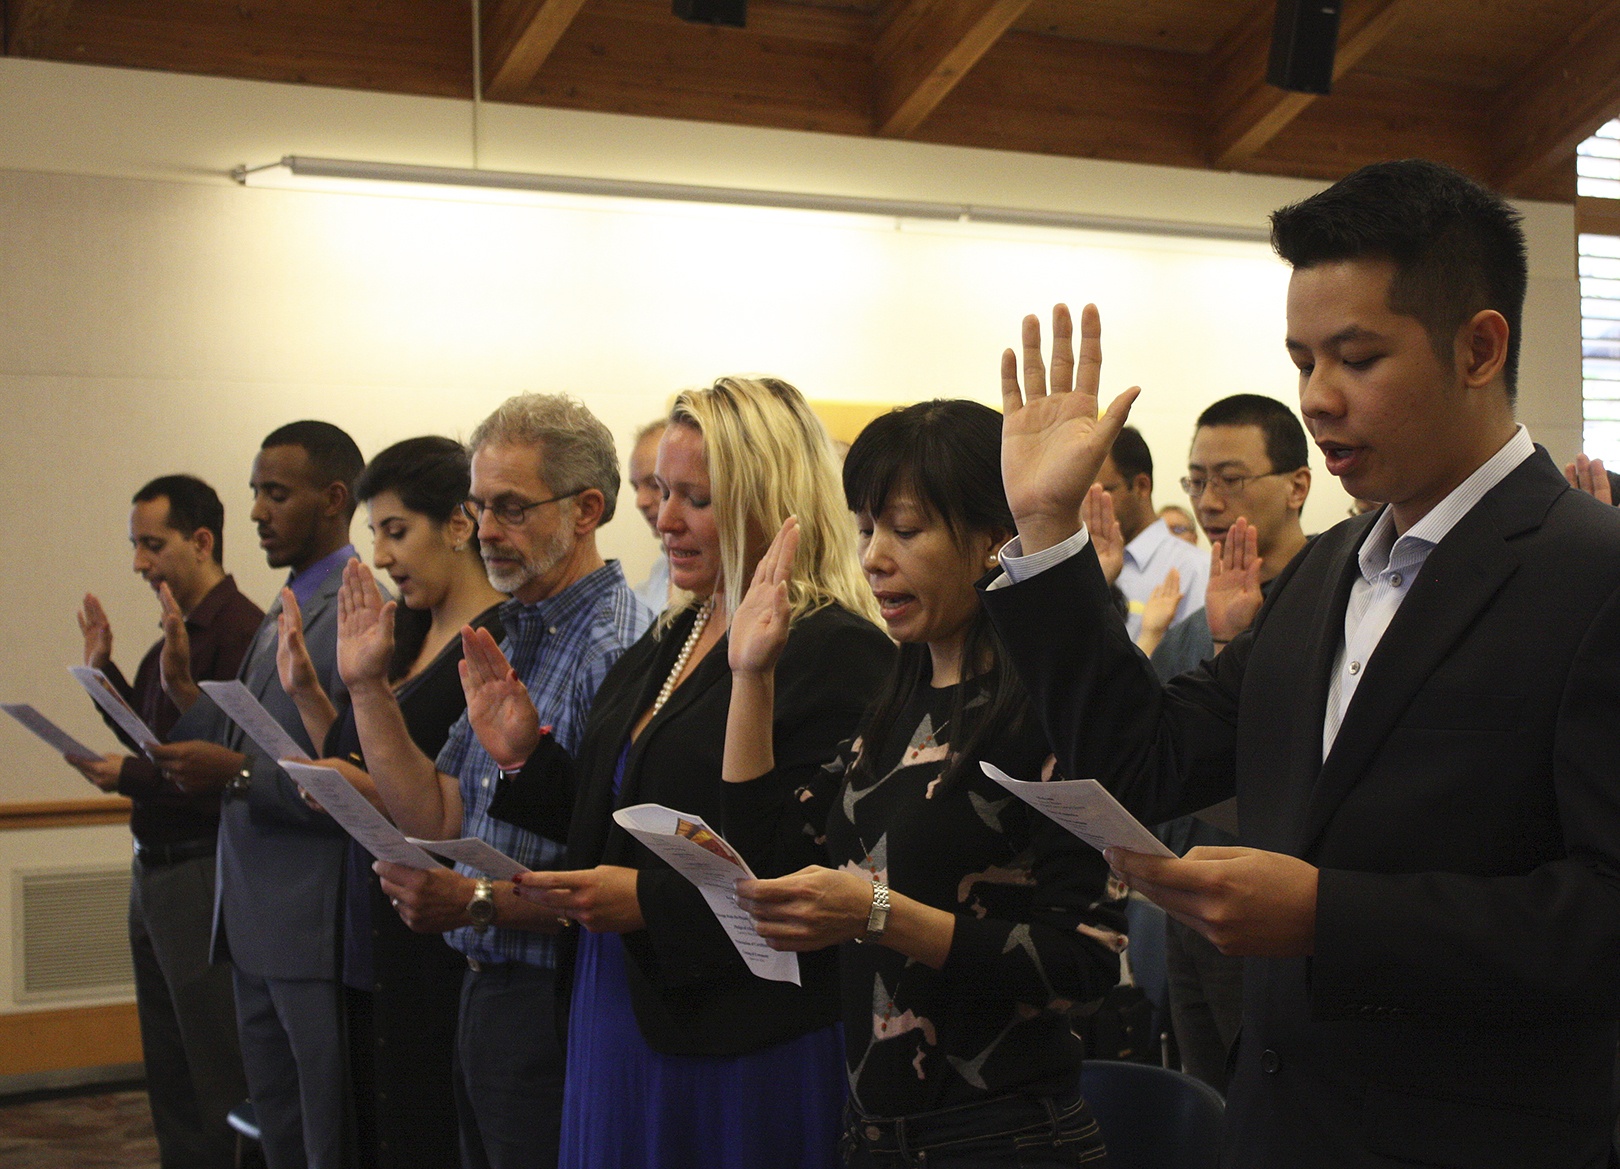 Group sworn in as U.S. citizens in Bellevue ceremony